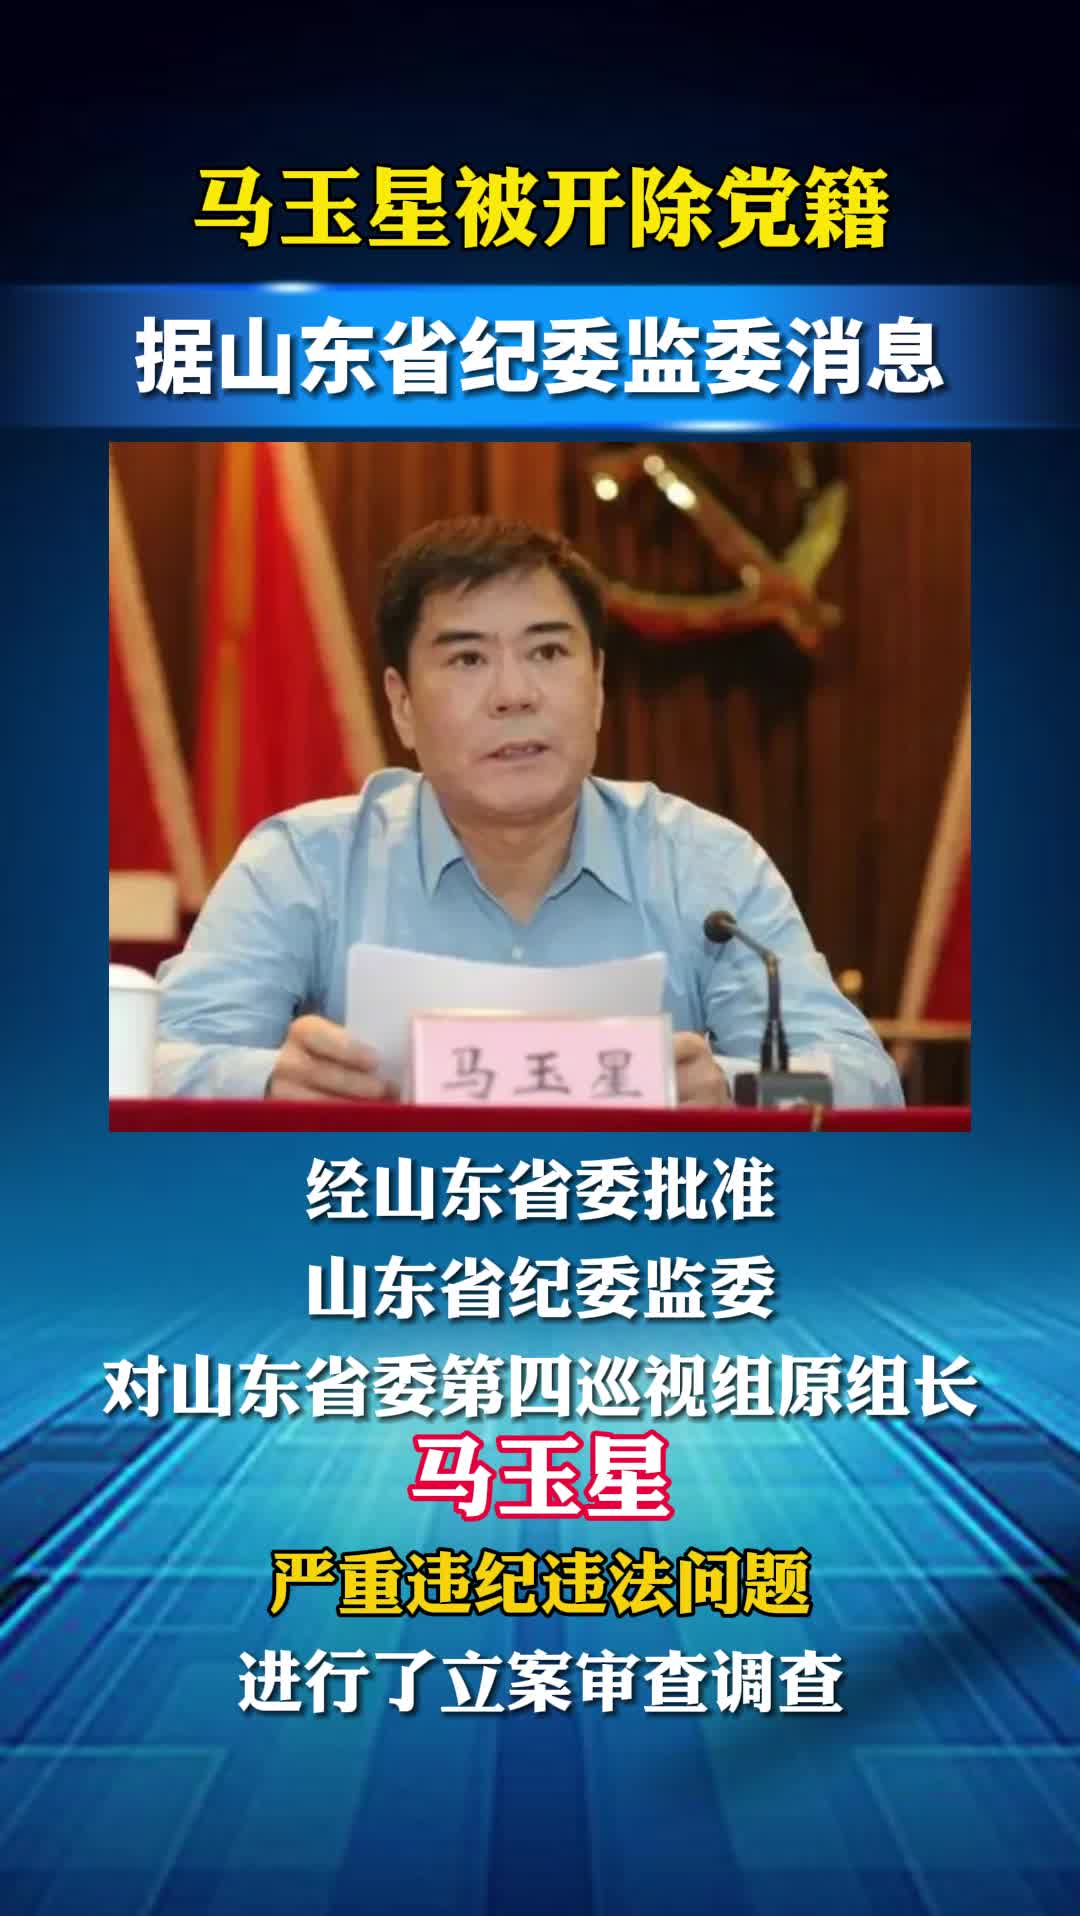 山东省委第四巡视组原组长马玉星被开除党籍